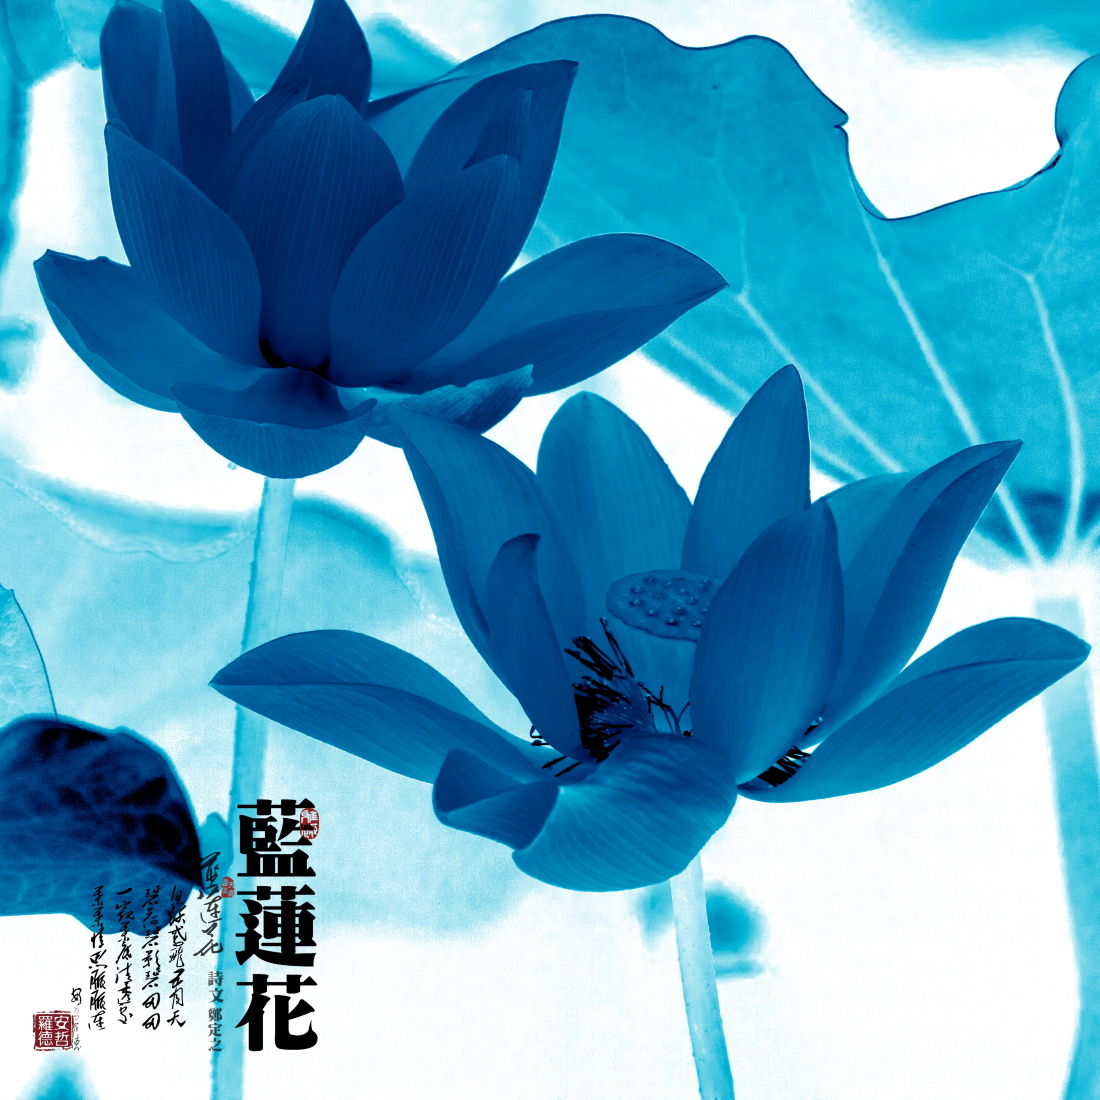 壁纸 三朵蓝莲花 1920x1200 HD 高清壁纸, 图片, 照片